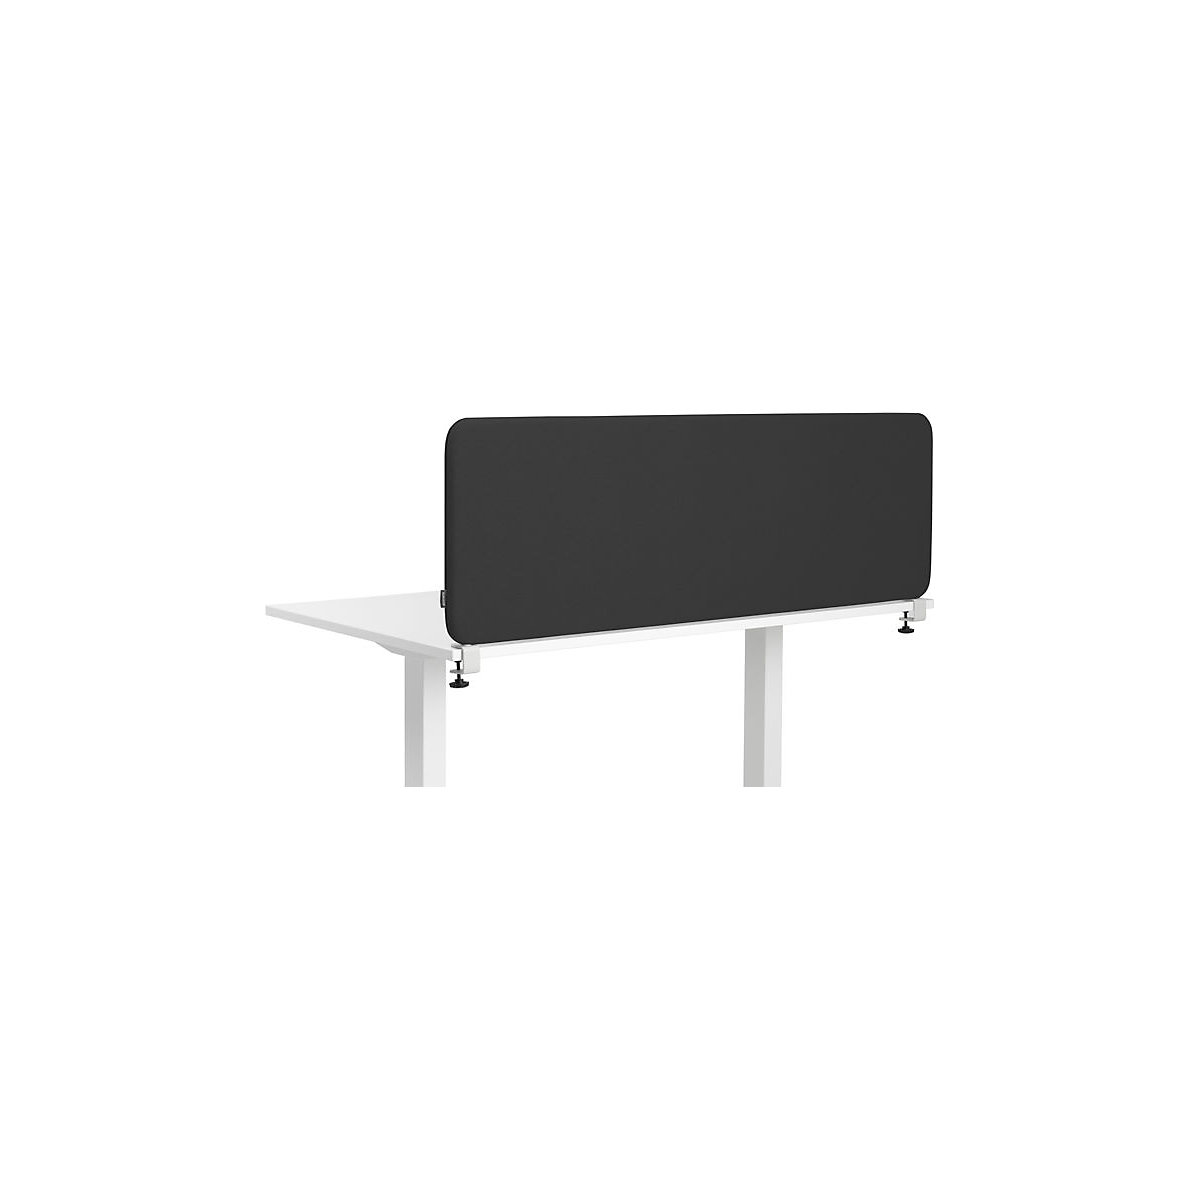 Softline Salsa acoustic desk partition, HxW 450 x 800 mm, fabric, black-5